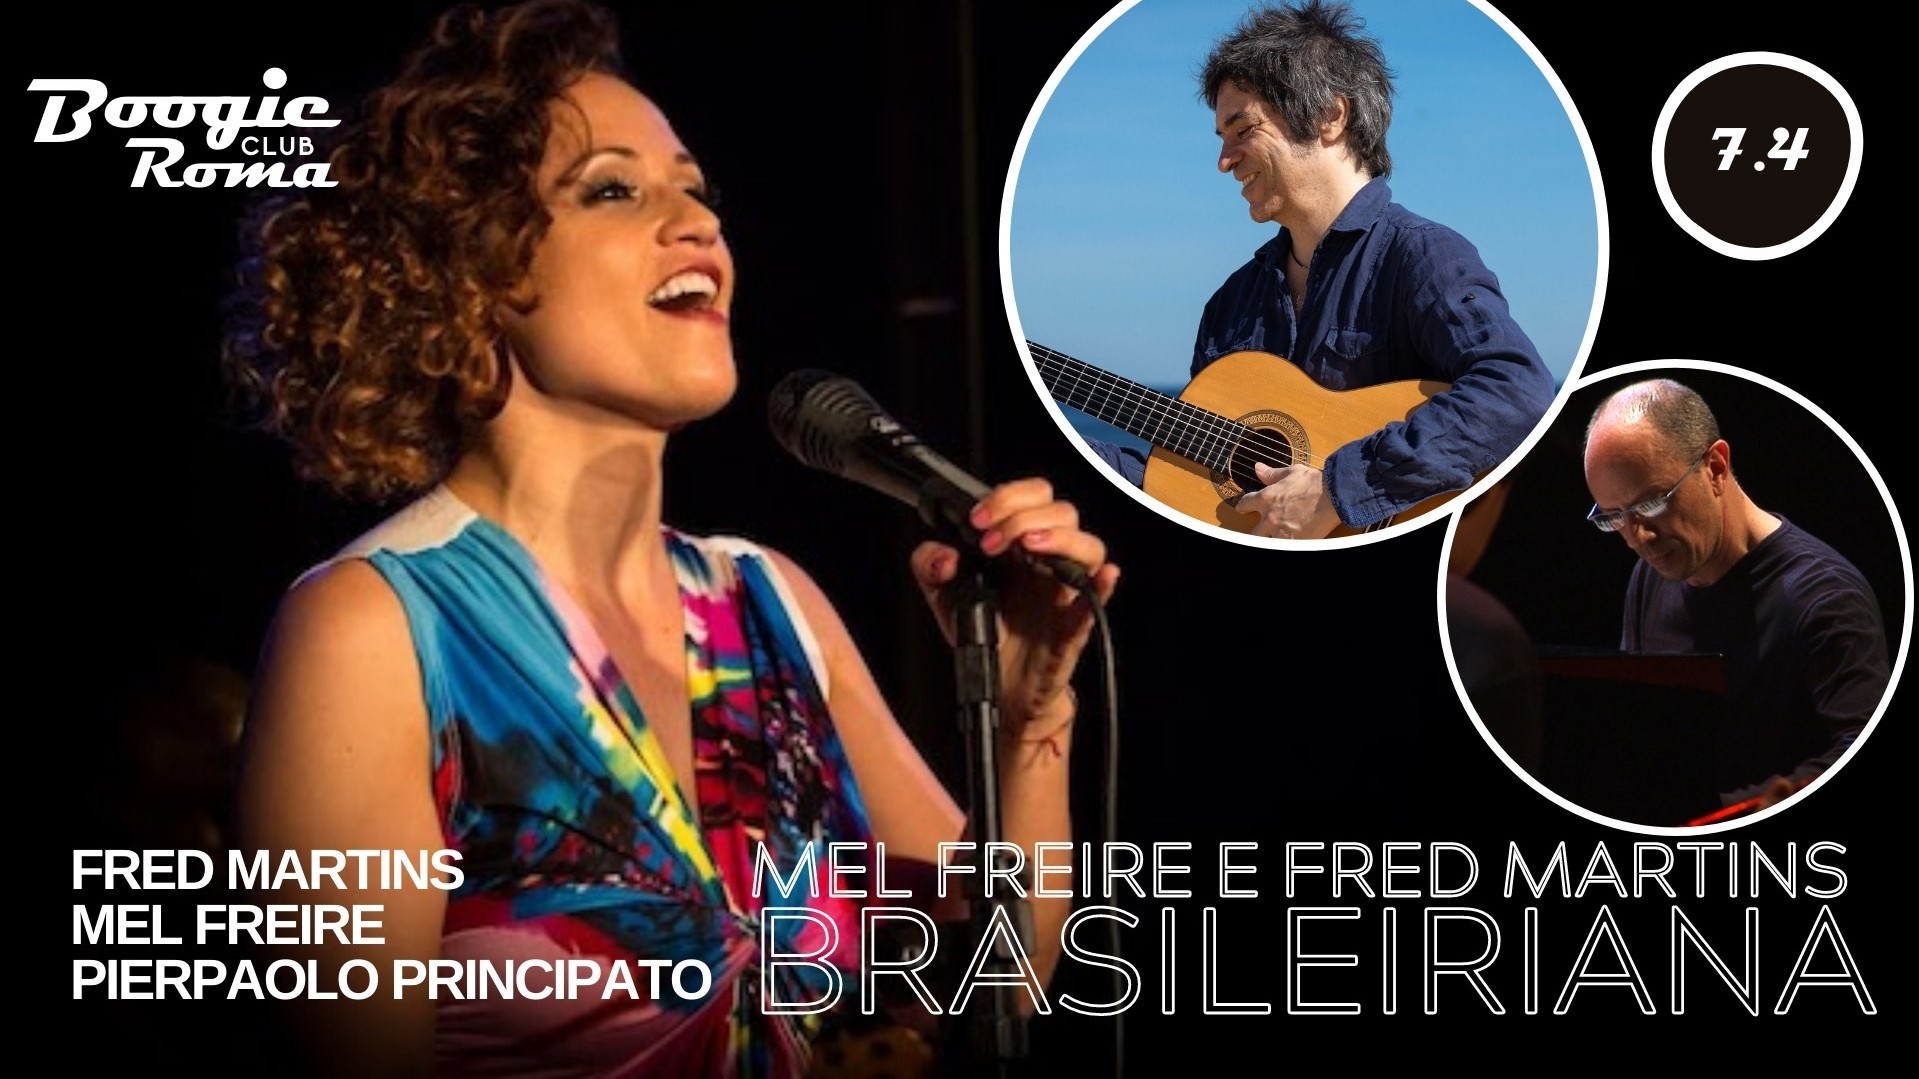 Mel Freire e Fred Martins ‘Brasileiriana’